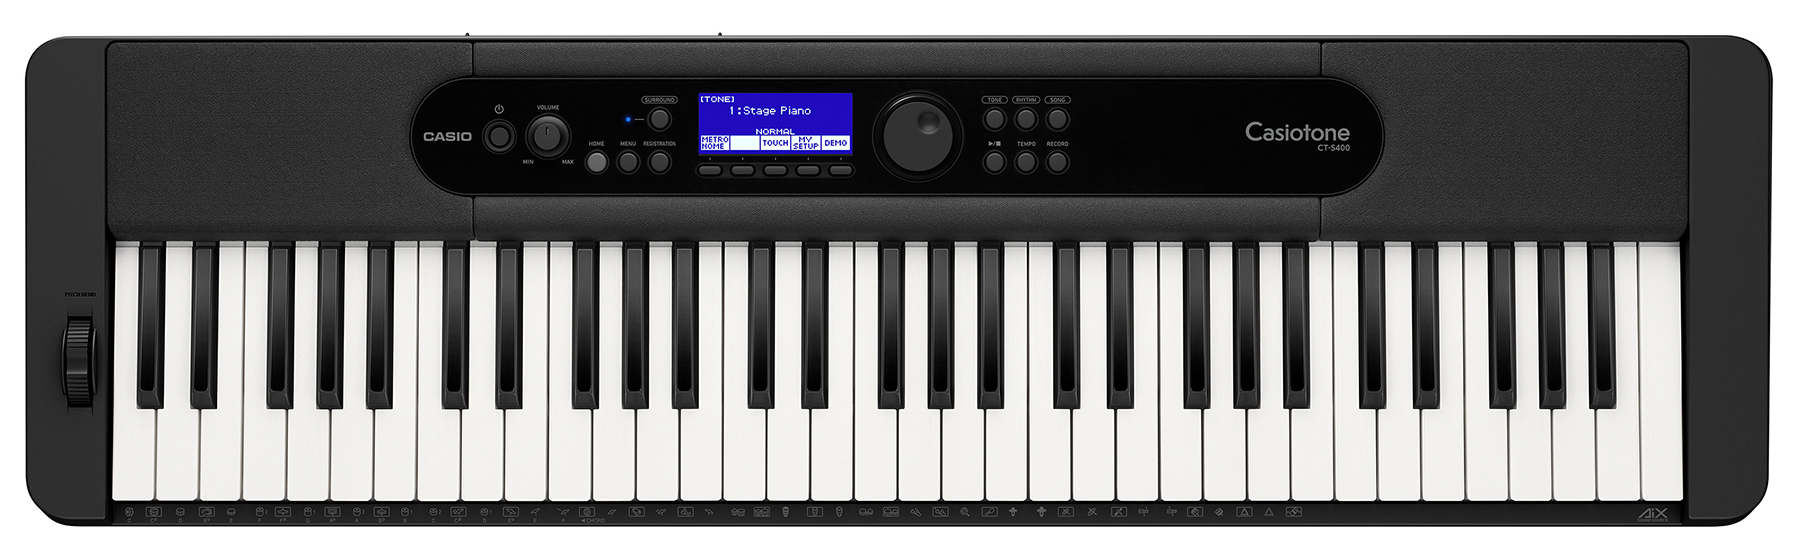 Køb Casio CT-S400 Keyboard - Pris 2095.00 kr.